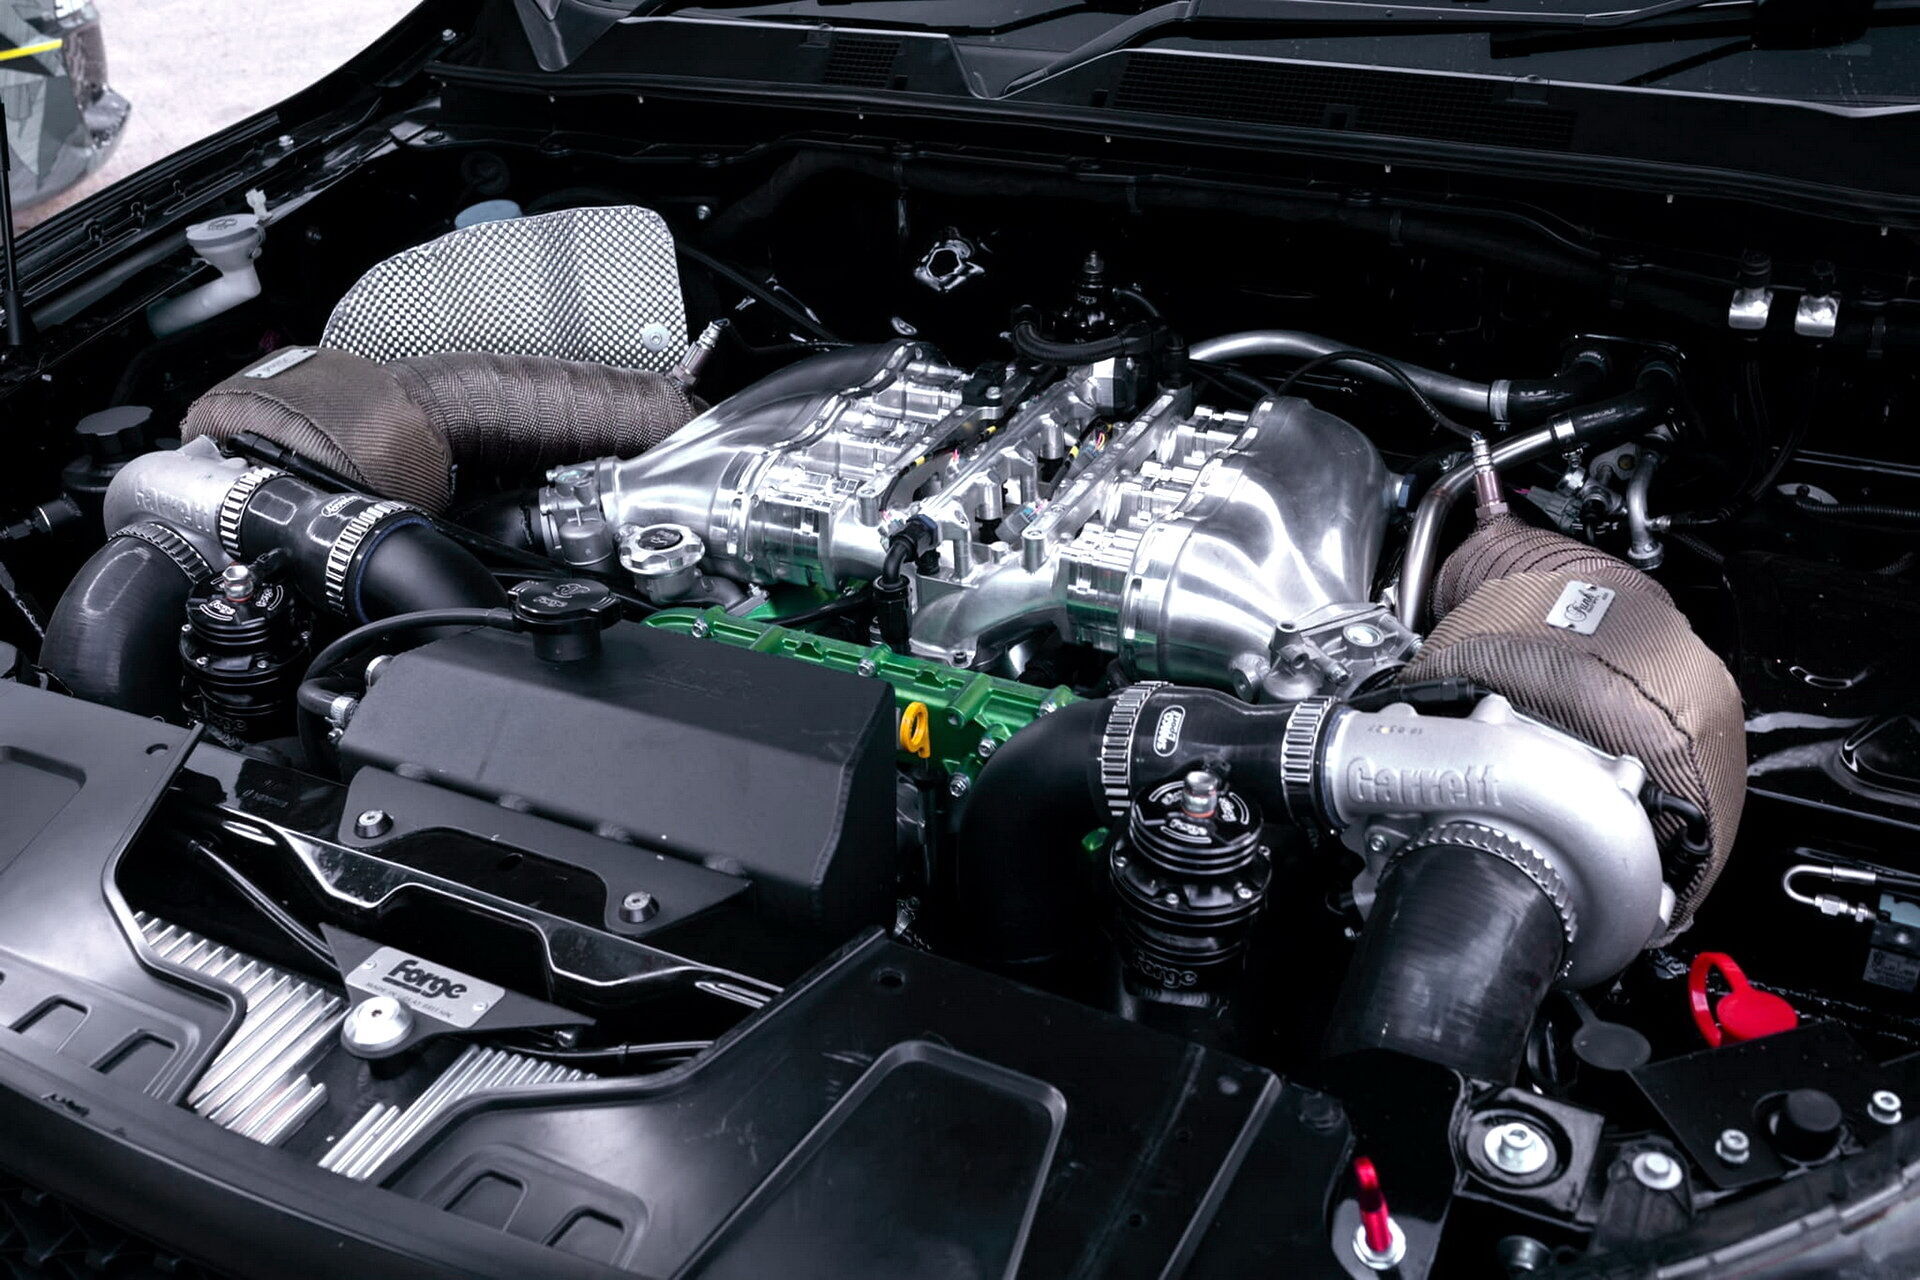 Серийный дизельный мотор Navara заменили на форсированный и доработанный бензиновый двигатель от Nissan GT-R